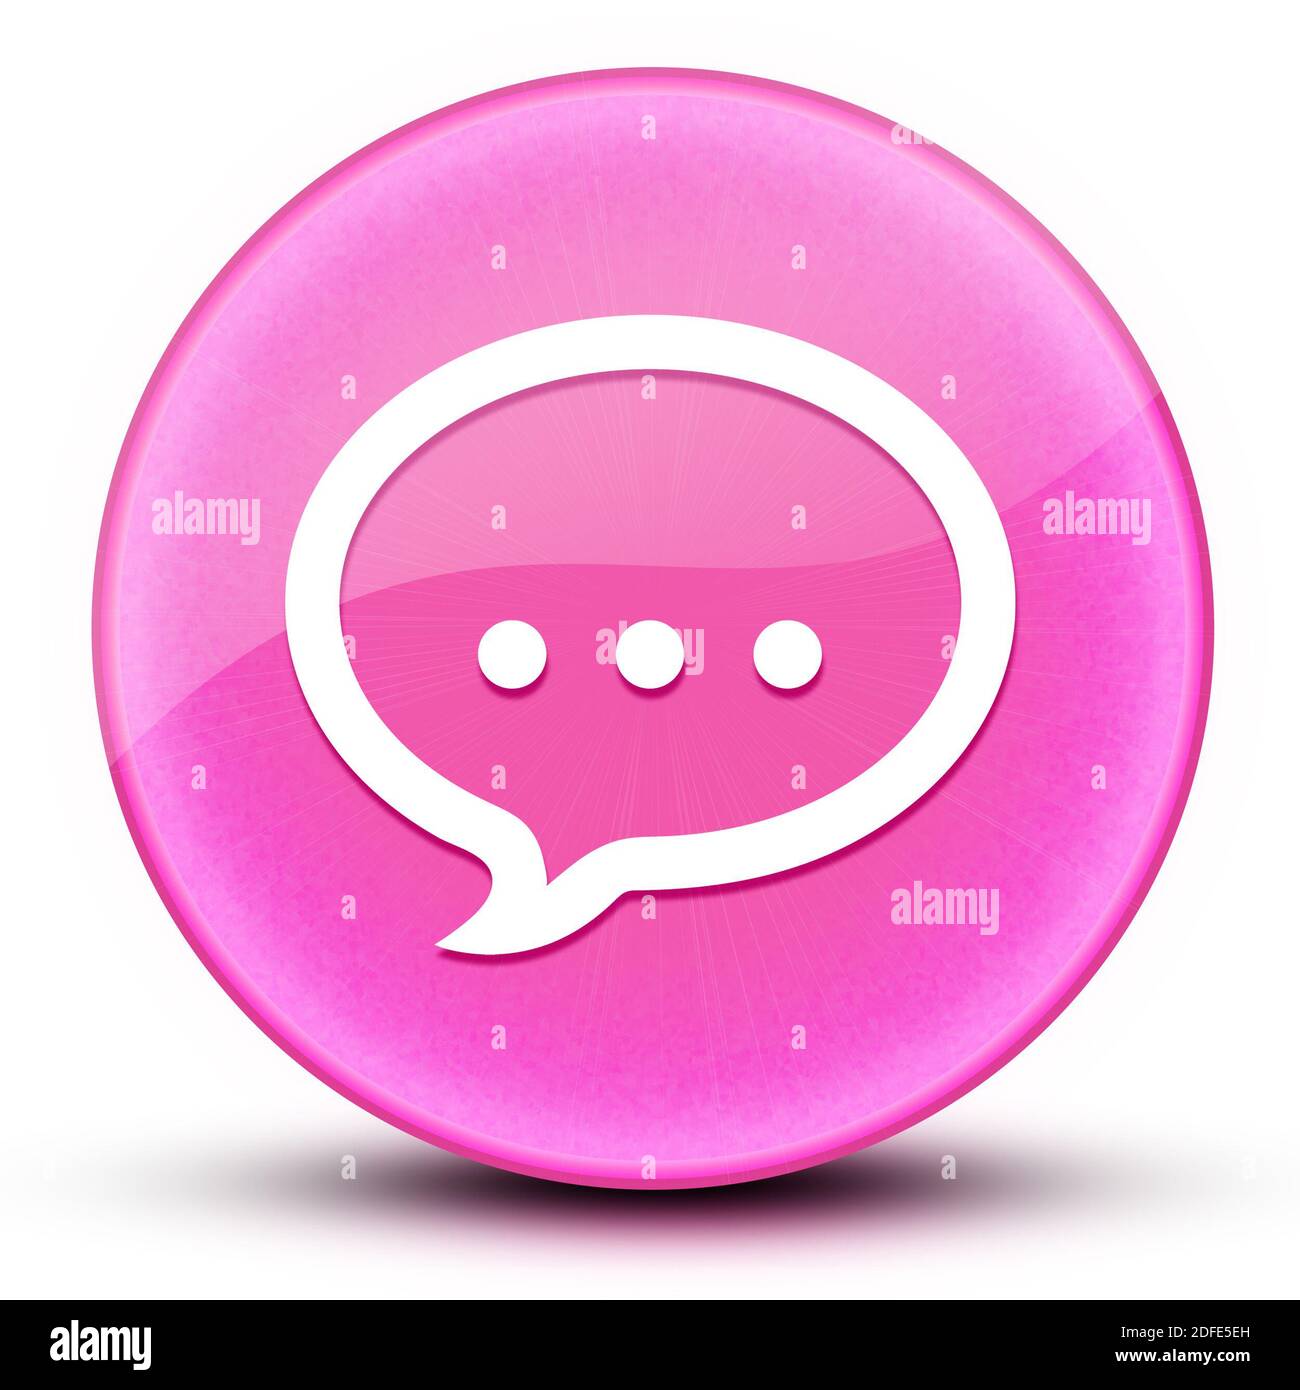 Talk eyeball lucido elegante pulsante rotondo rosa illustrazione astratta Foto Stock